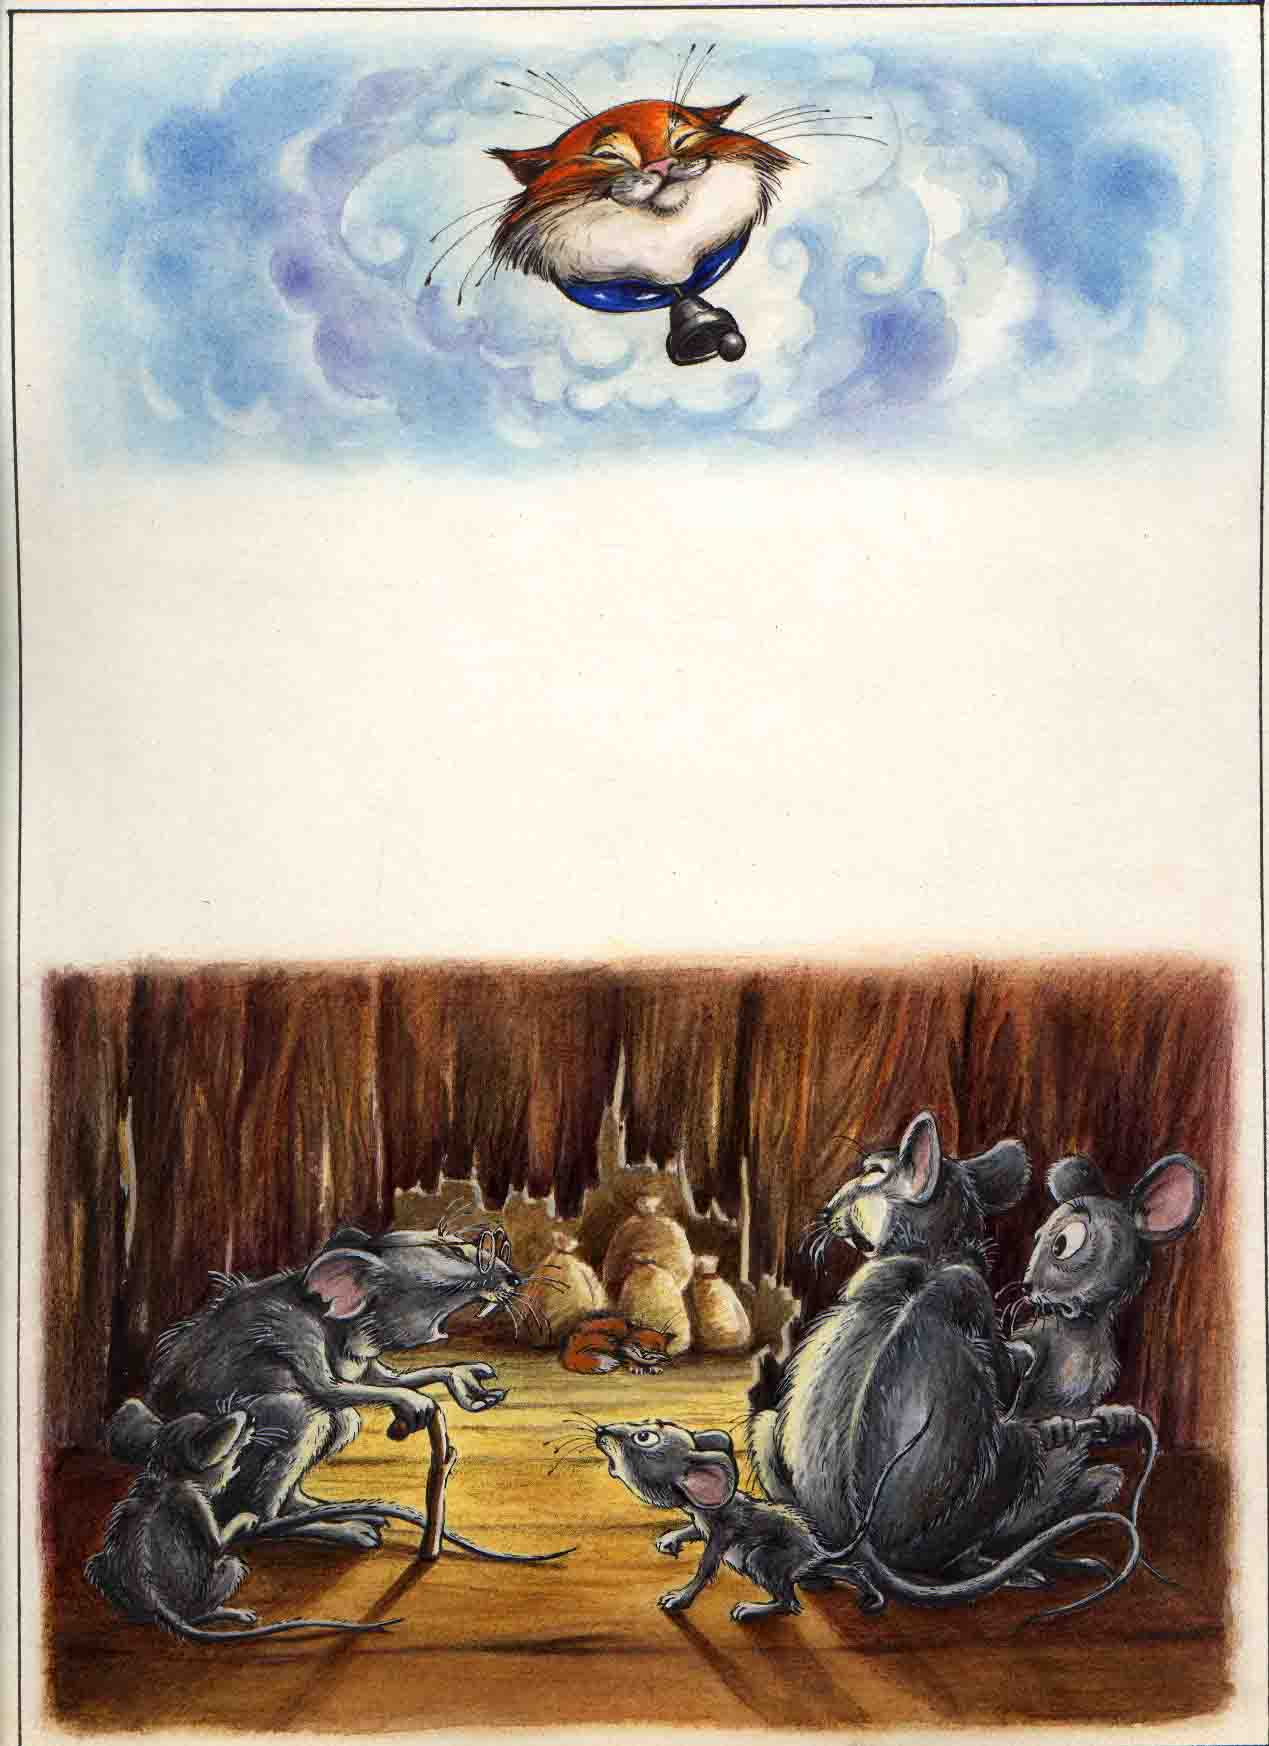 Иллюстрация к книге "Сказки о животных" 2001